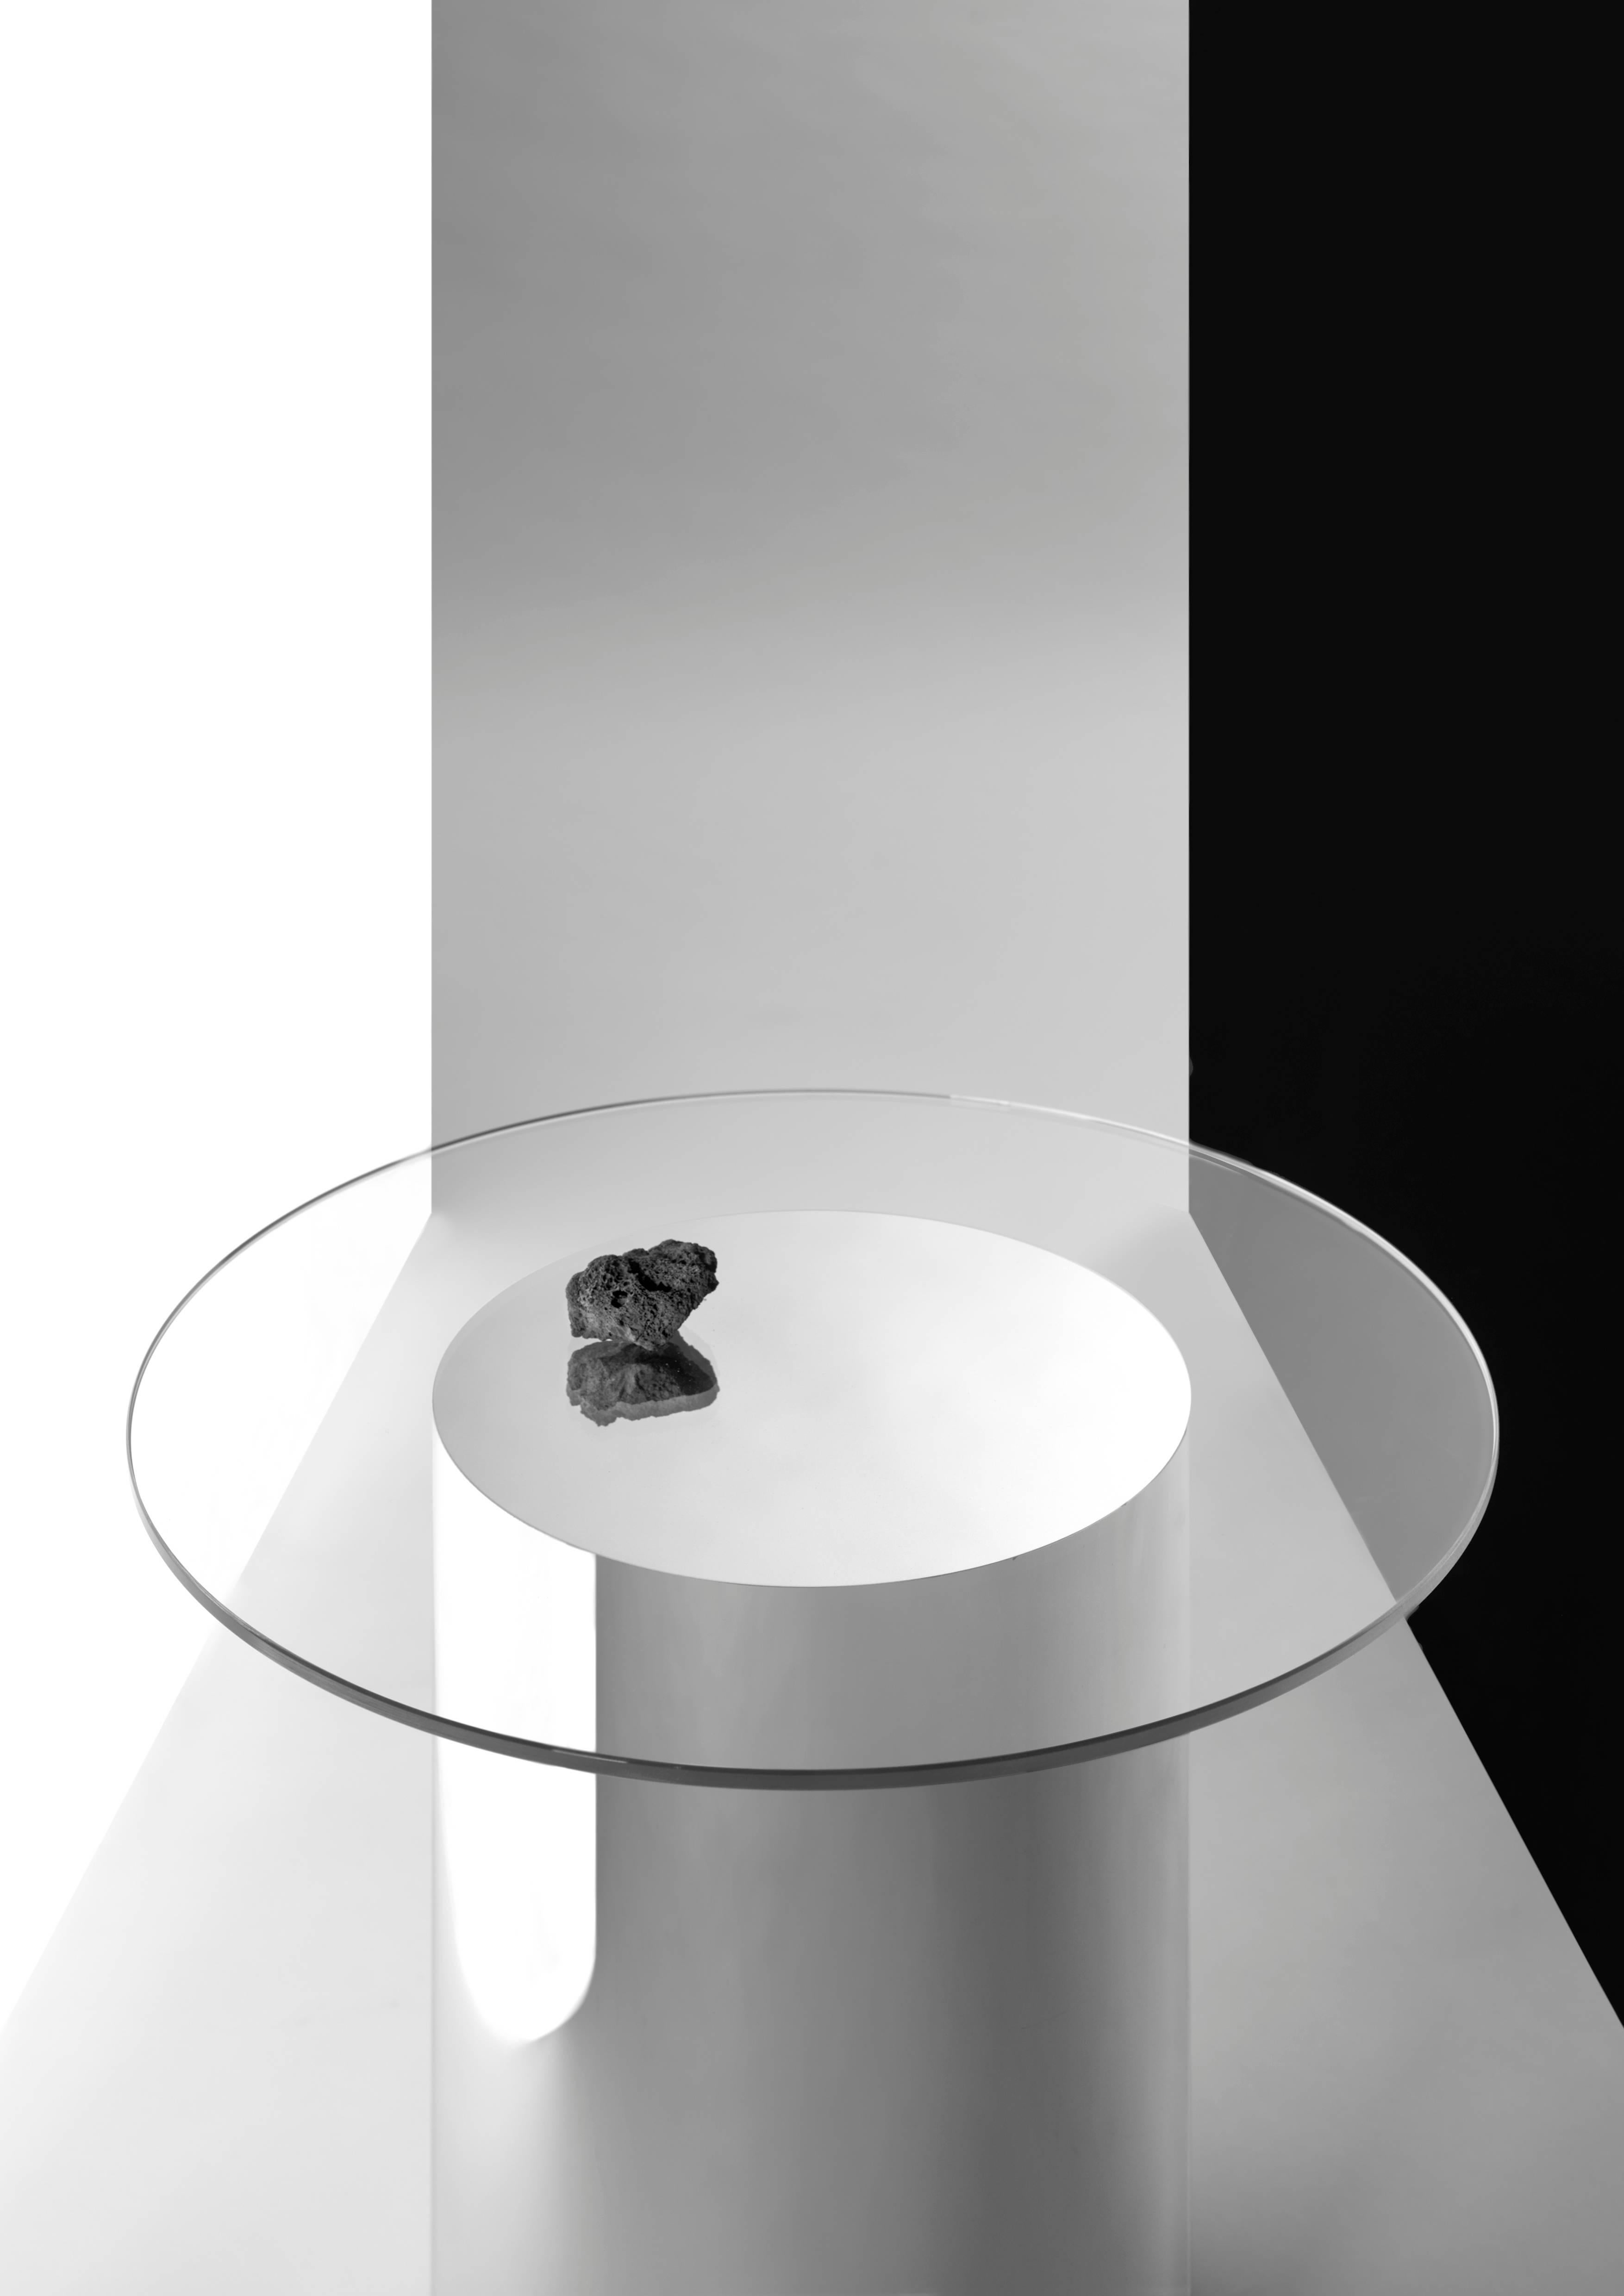 Satz von zwei Beistelltischen Modell '2001', entworfen von Ramon Úbeda und Otto Canalda.
Hergestellt von BD Barcelona (Spanien) 

Die Beistelltische 2001 bestehen aus ultraklarem Glas und einer verspiegelten Pyrex-Röhre, die keine Verbindung hat.